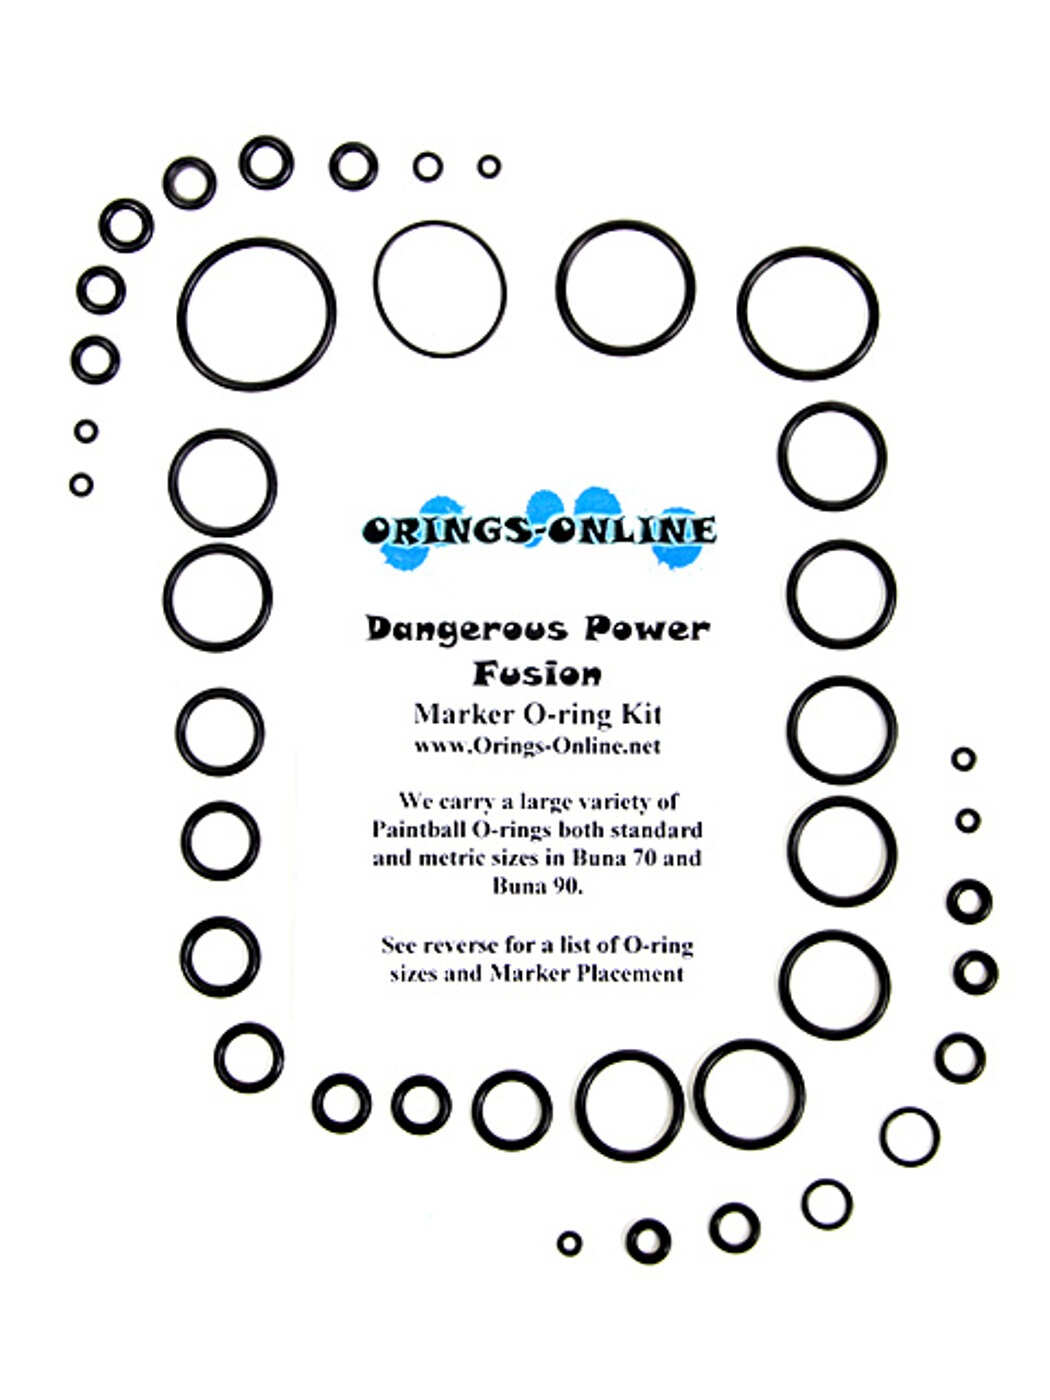 Dangerous Power Fusion Marker O-ring Kit